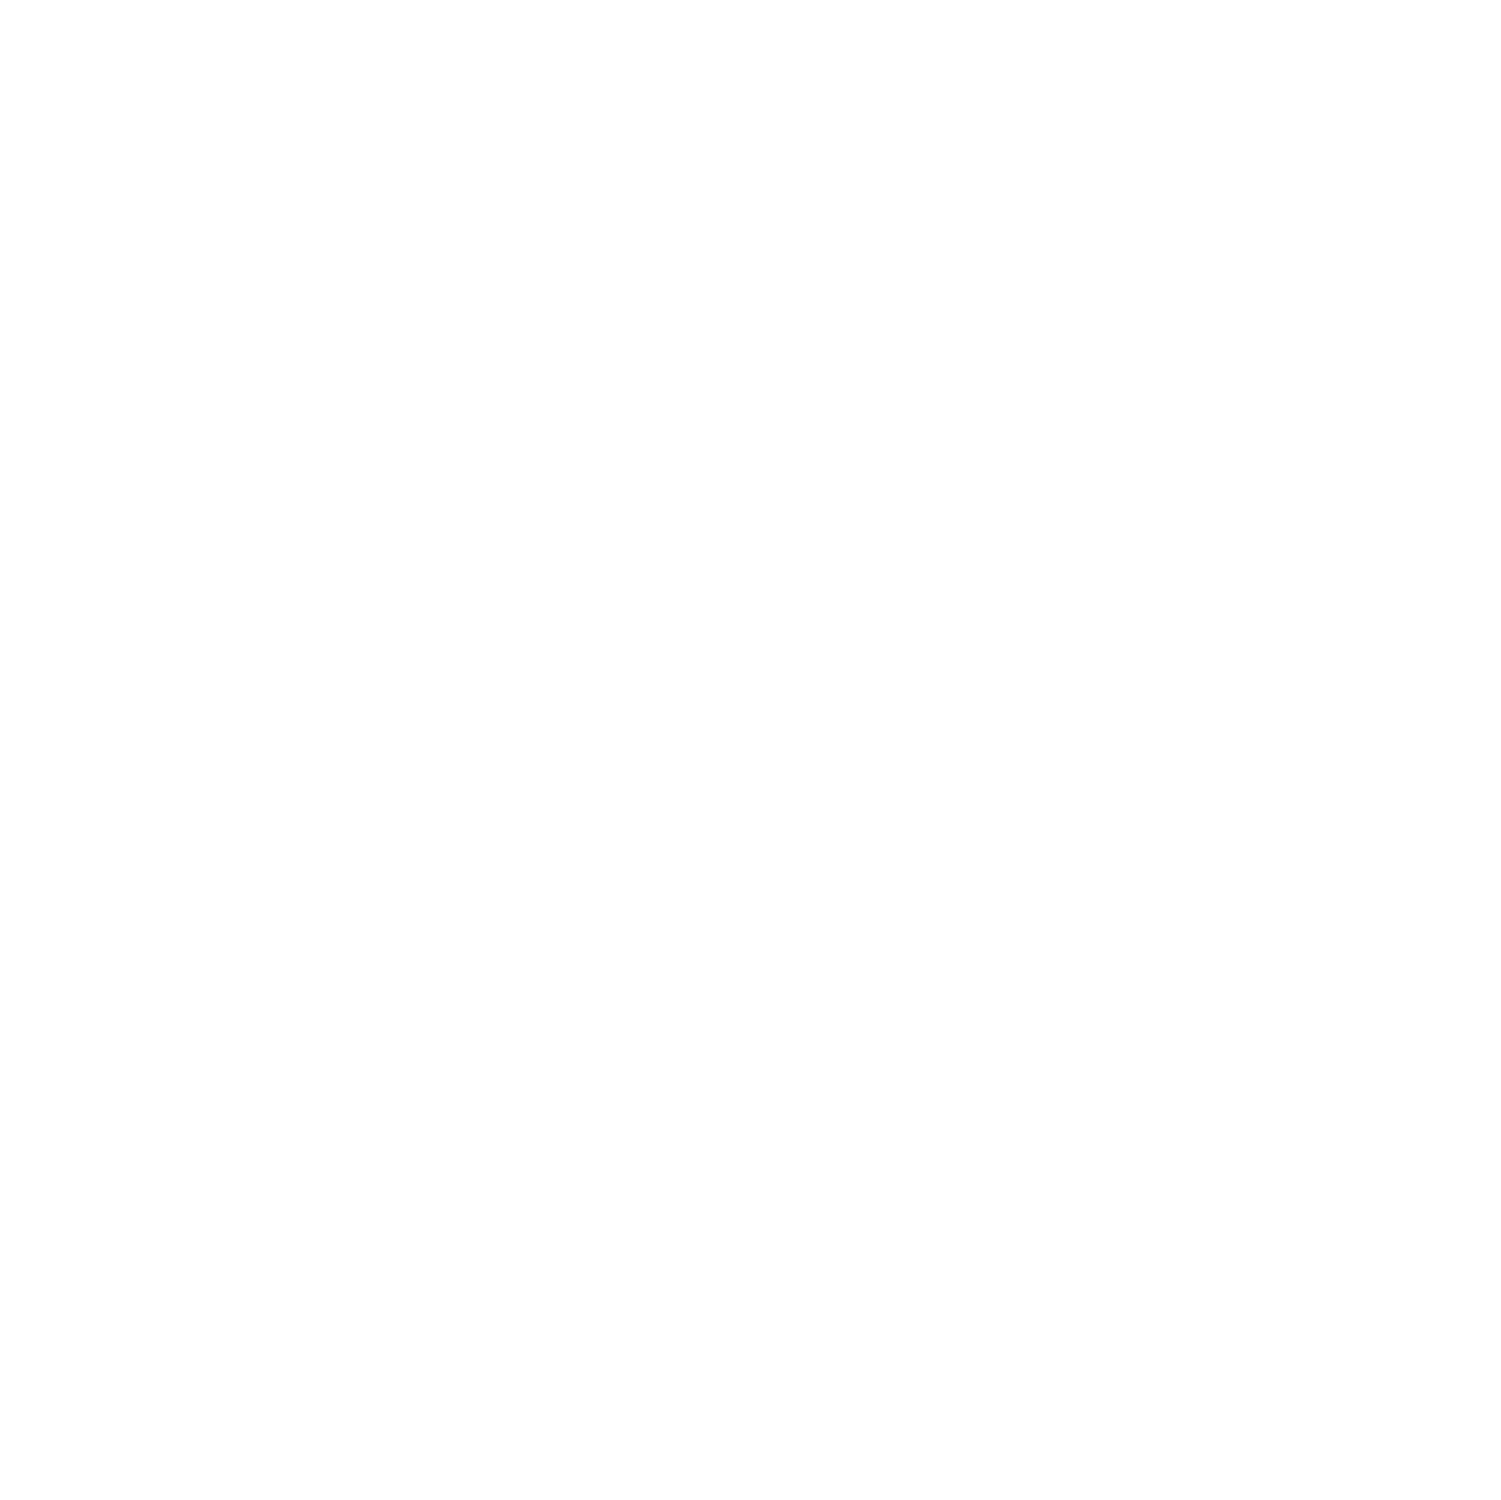 C Co "Chaos", 198TH ESB-E